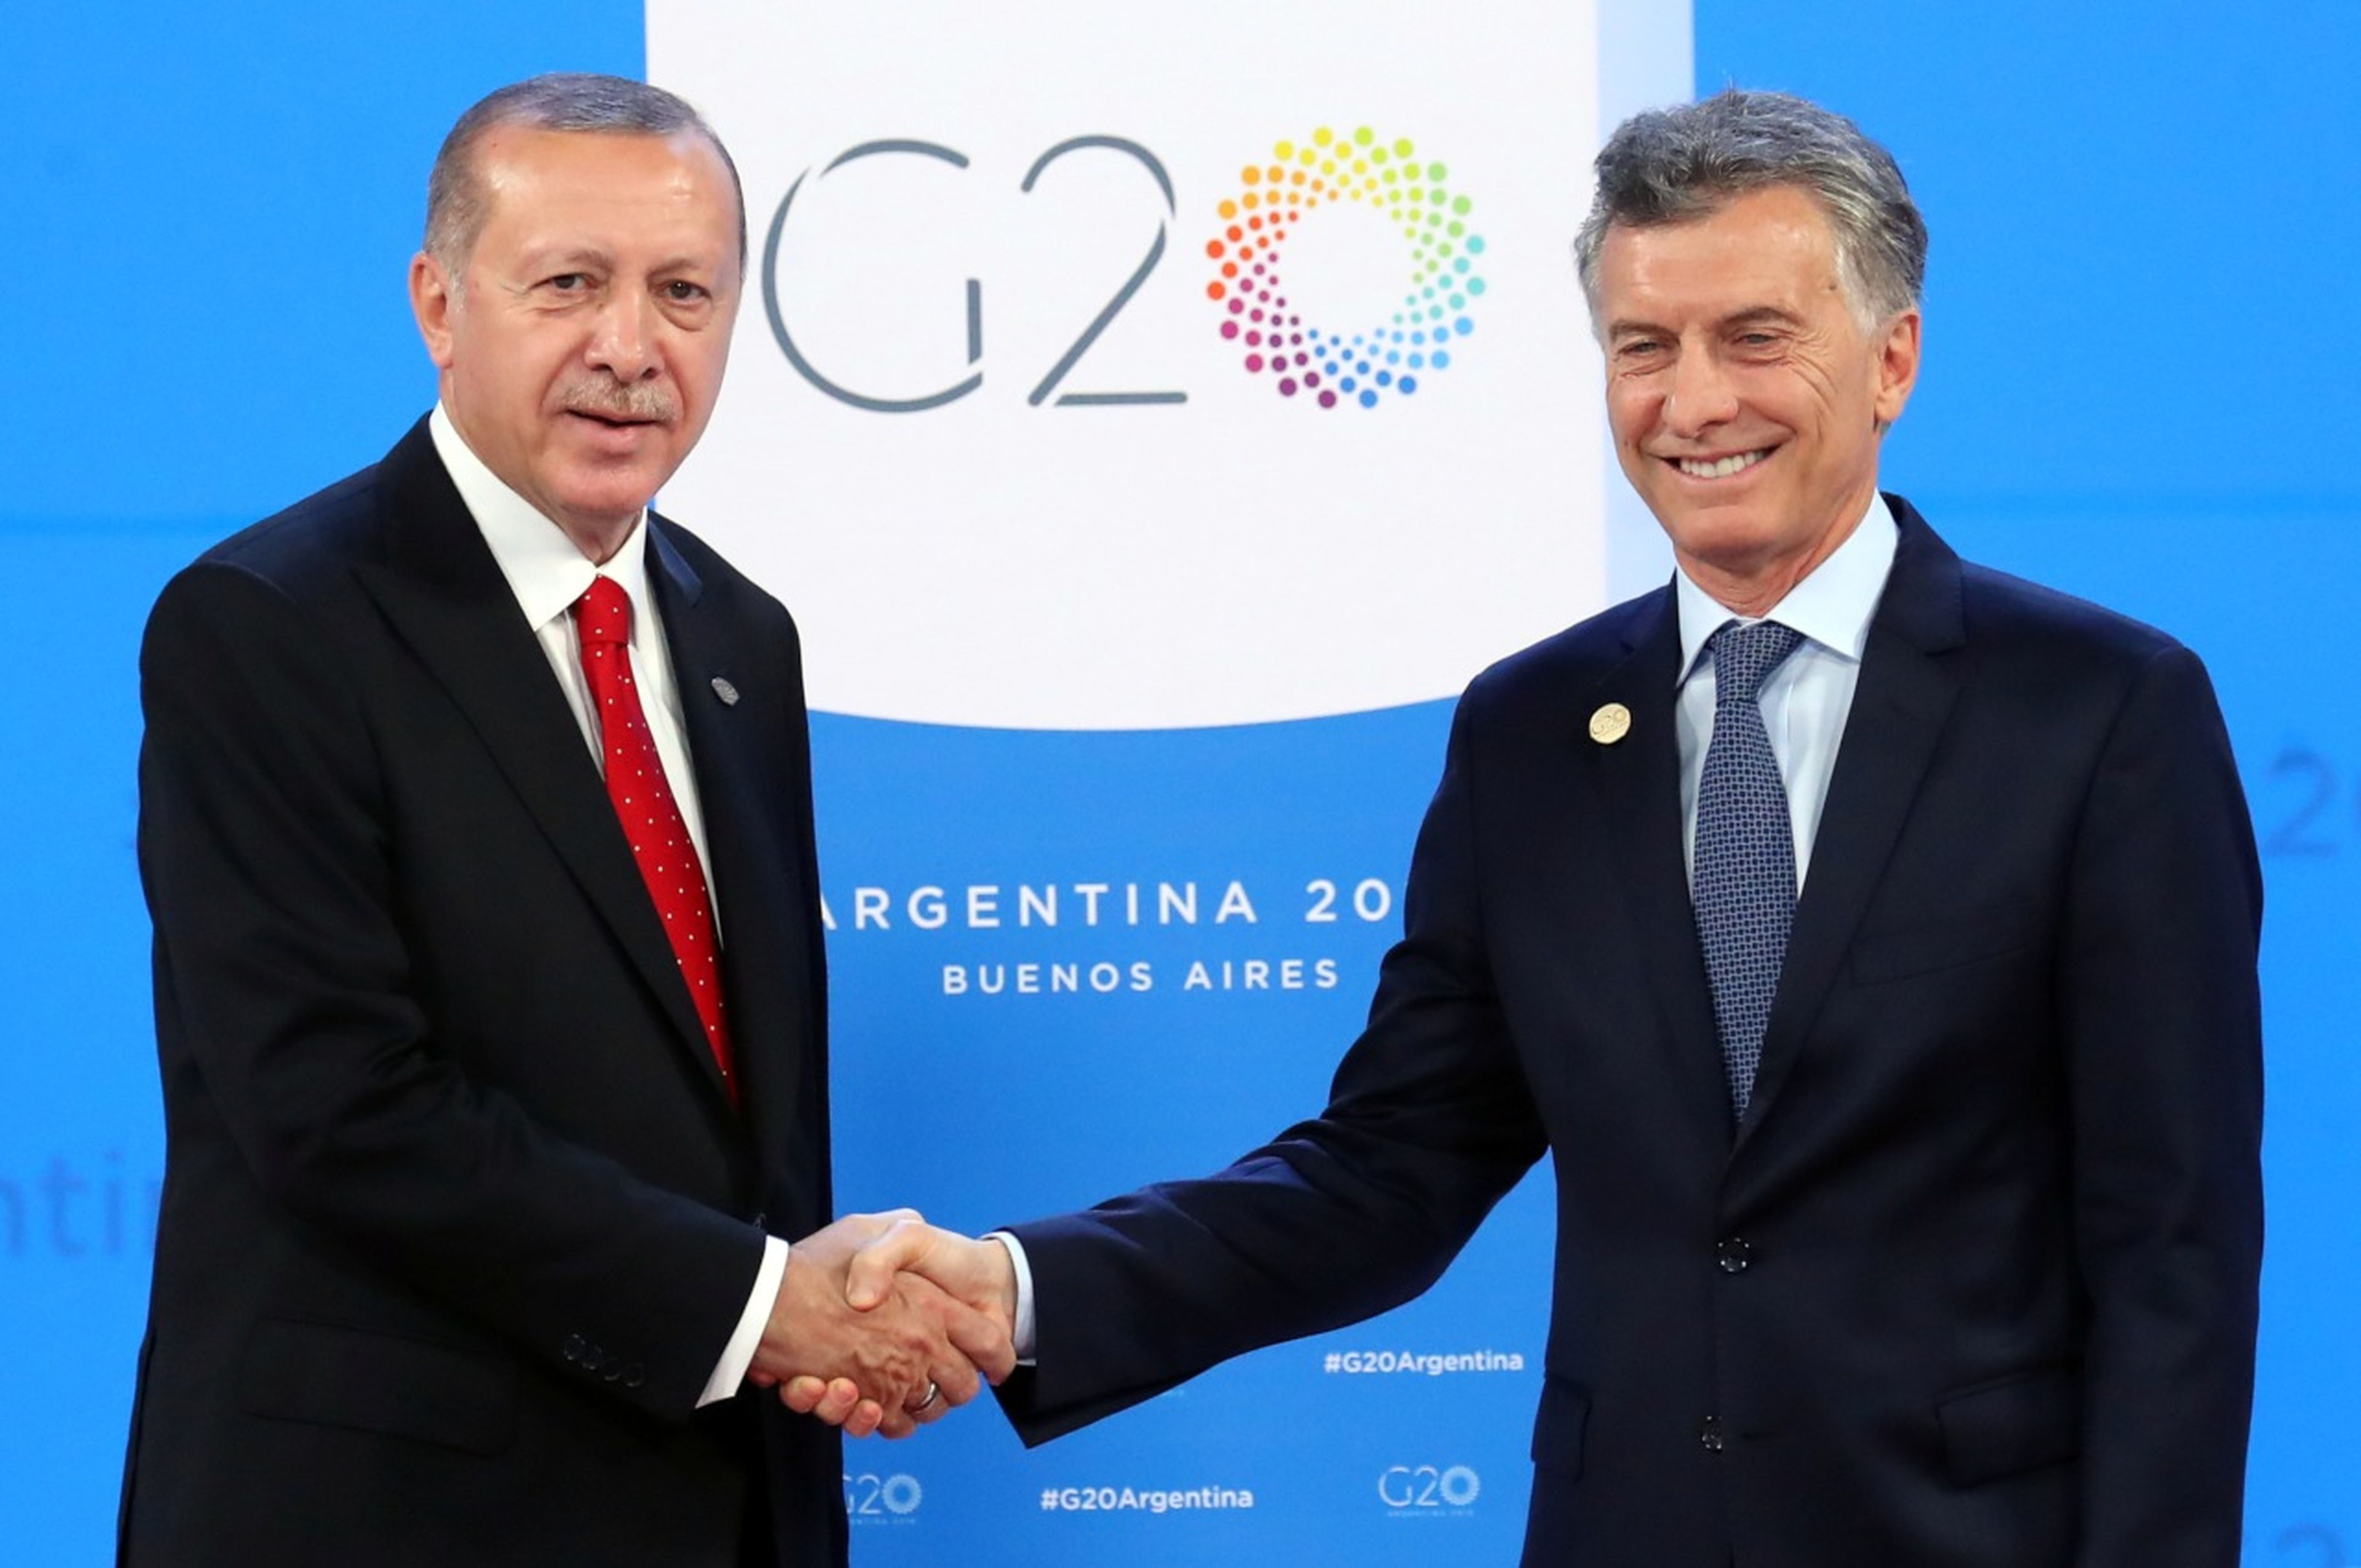 El presidente turco, Recep Tayyip Erdogan, y su homólogo argentino, Mauricio Macri